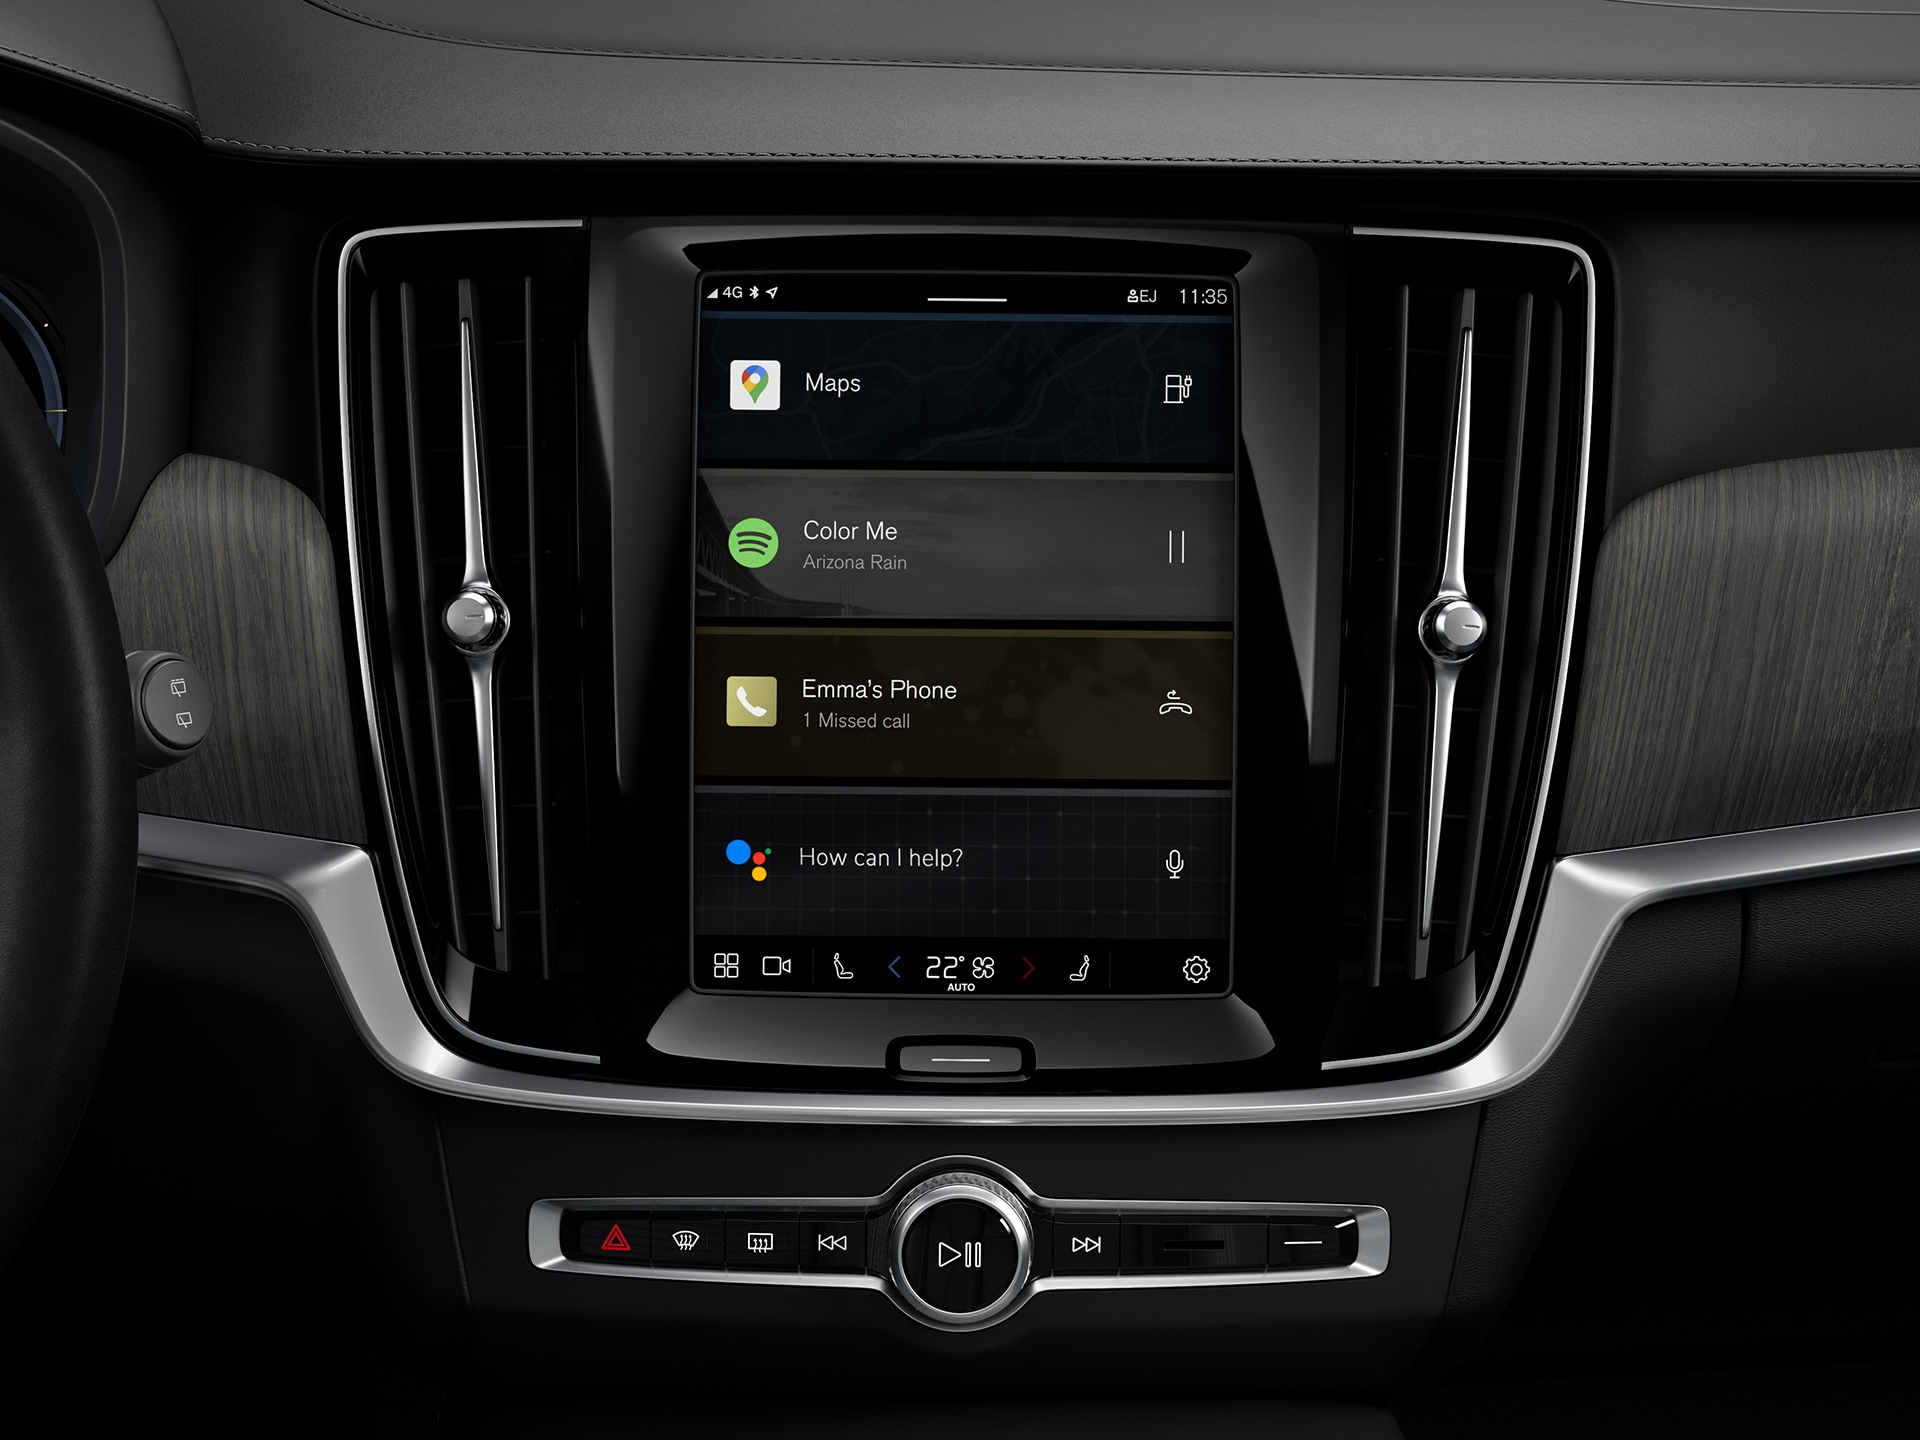 Konsola środkowa w kombi Volvo z wbudowanym systemem informacyjno-rozrywkowym Google